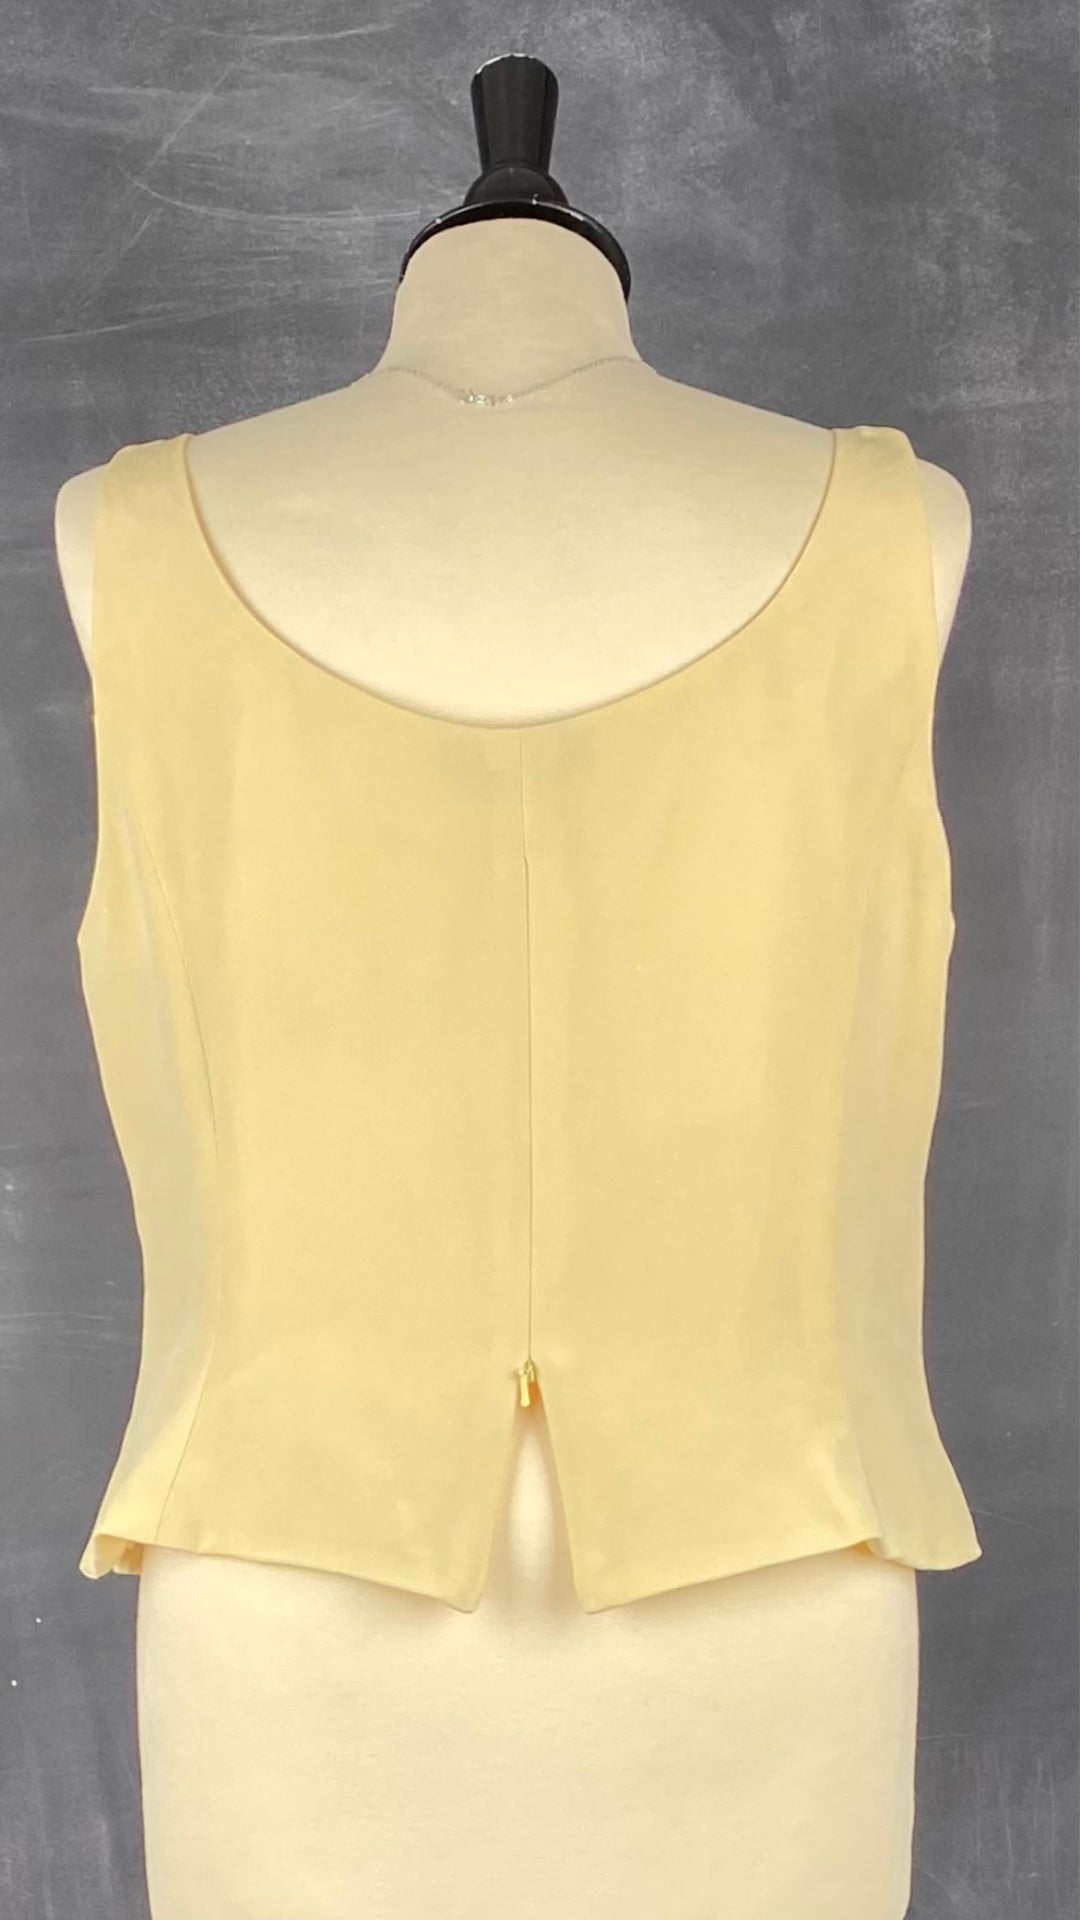 Camisole doublée en soie jaune doux Simon Chang, taille 16. Vue de dos, zip ouvert.